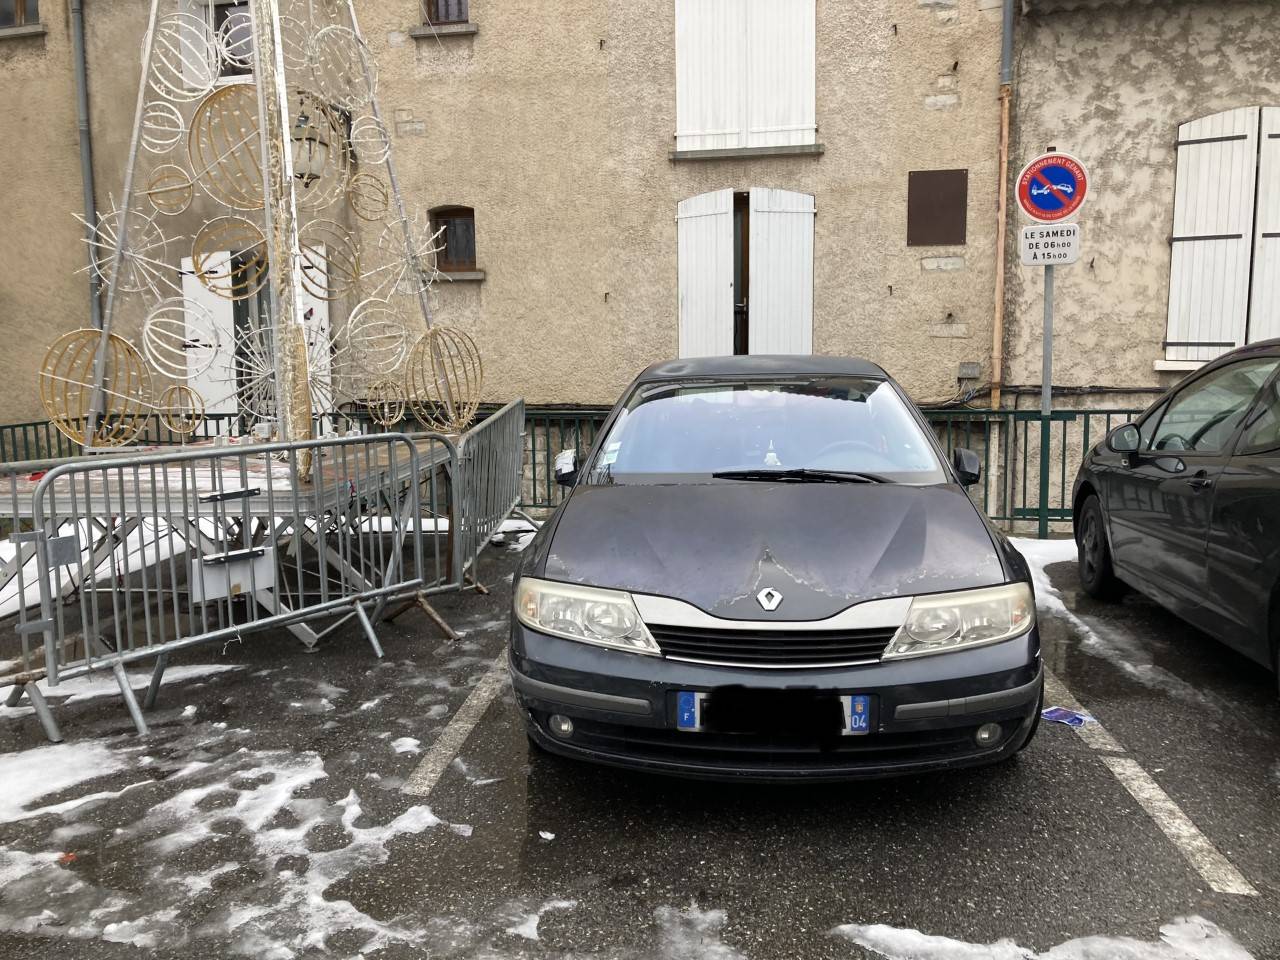 Sisteron : un homme gravement malade vit dans sa voiture, la toile s'indigne, la Ville se défend